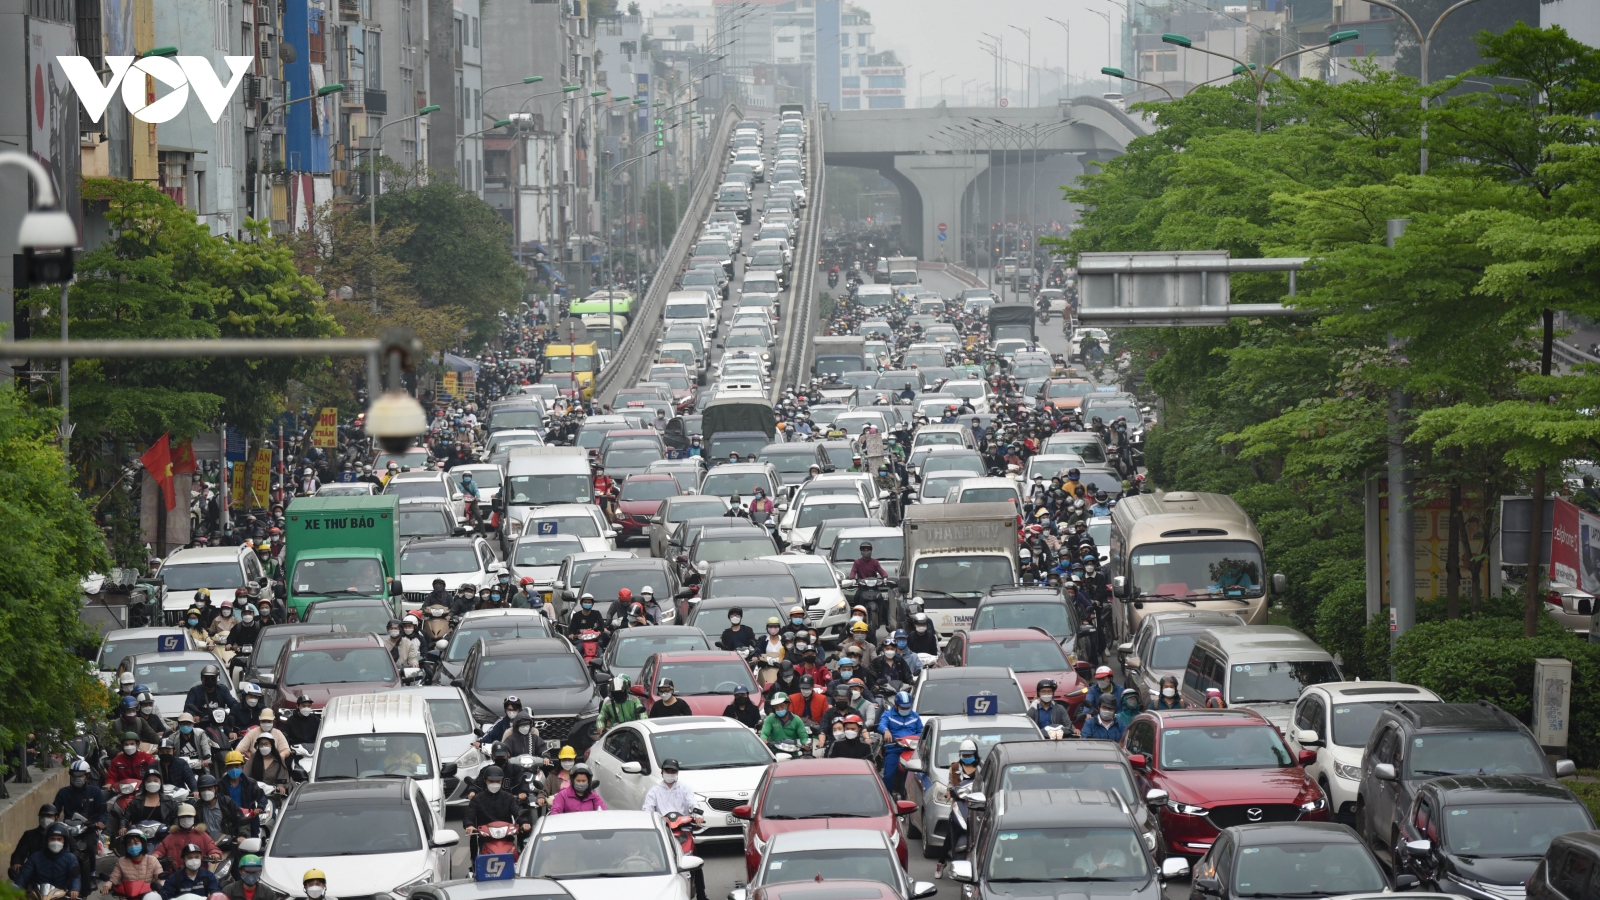 Ý thức tham gia giao thông kém khiến đường phố Hà Nội ngày càng tắc